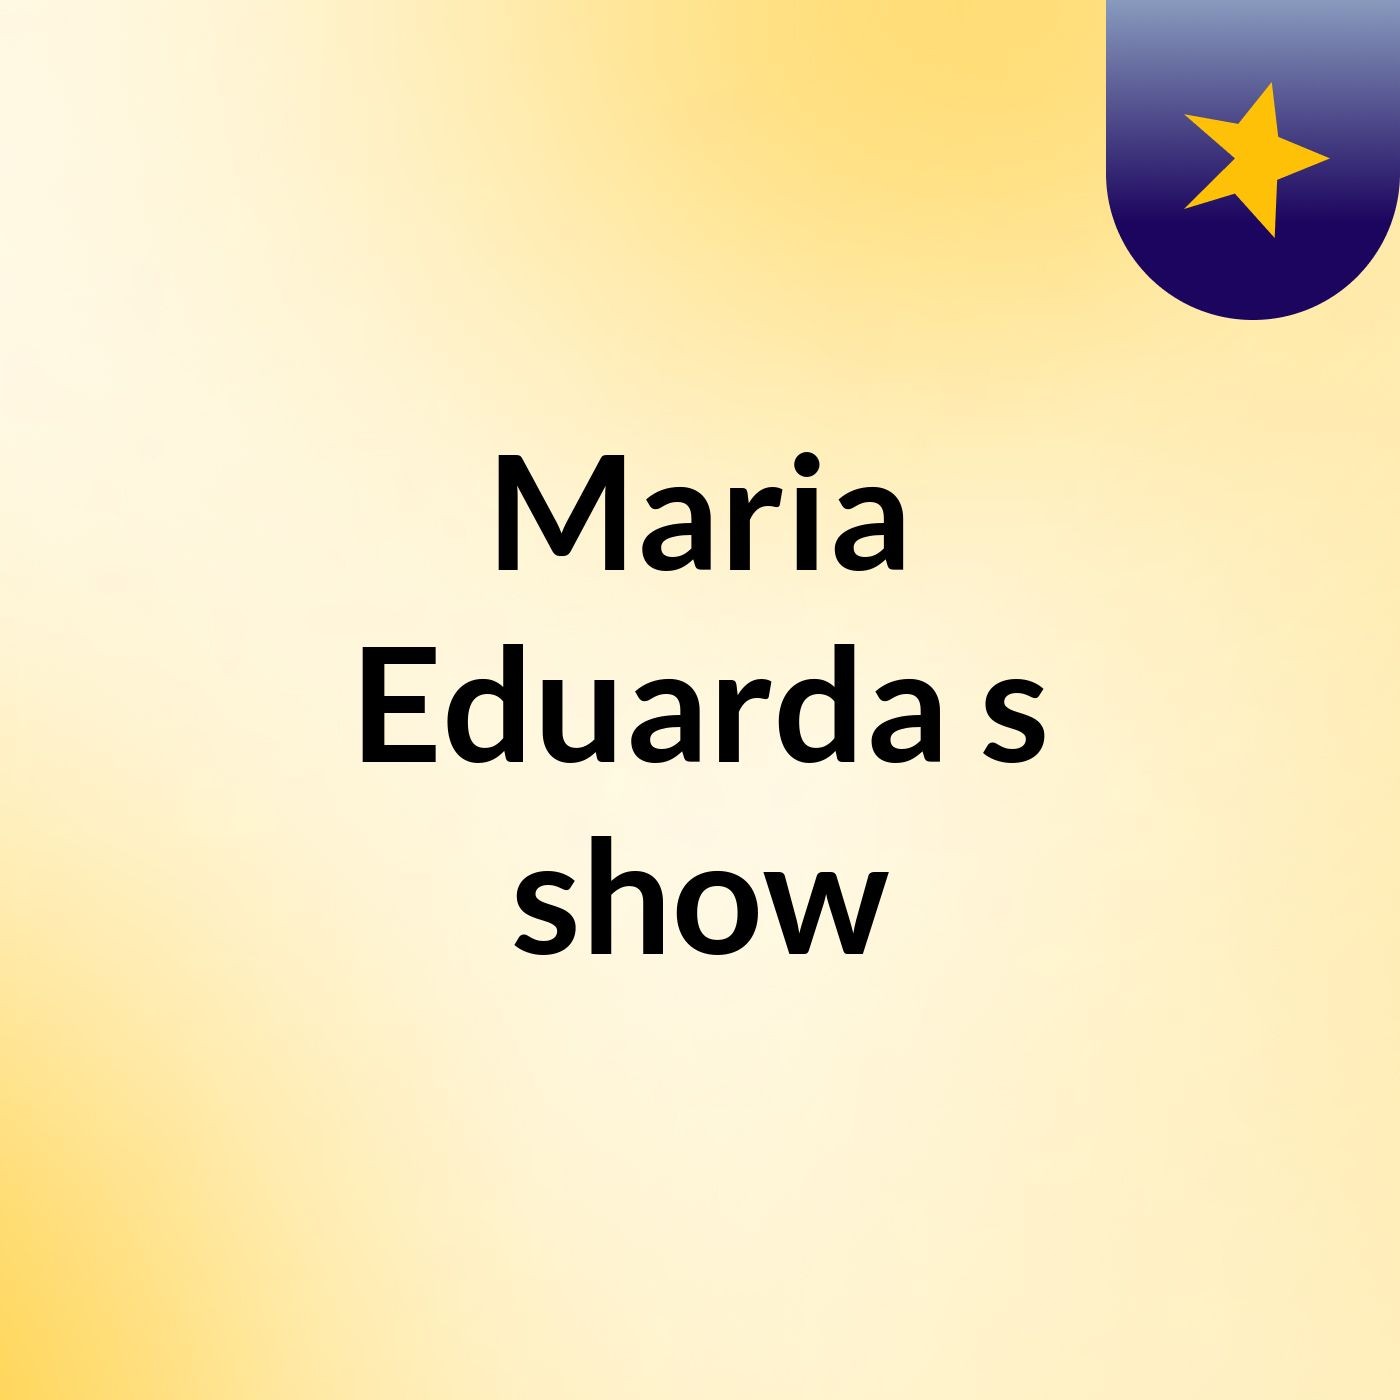 Maria Eduarda's show